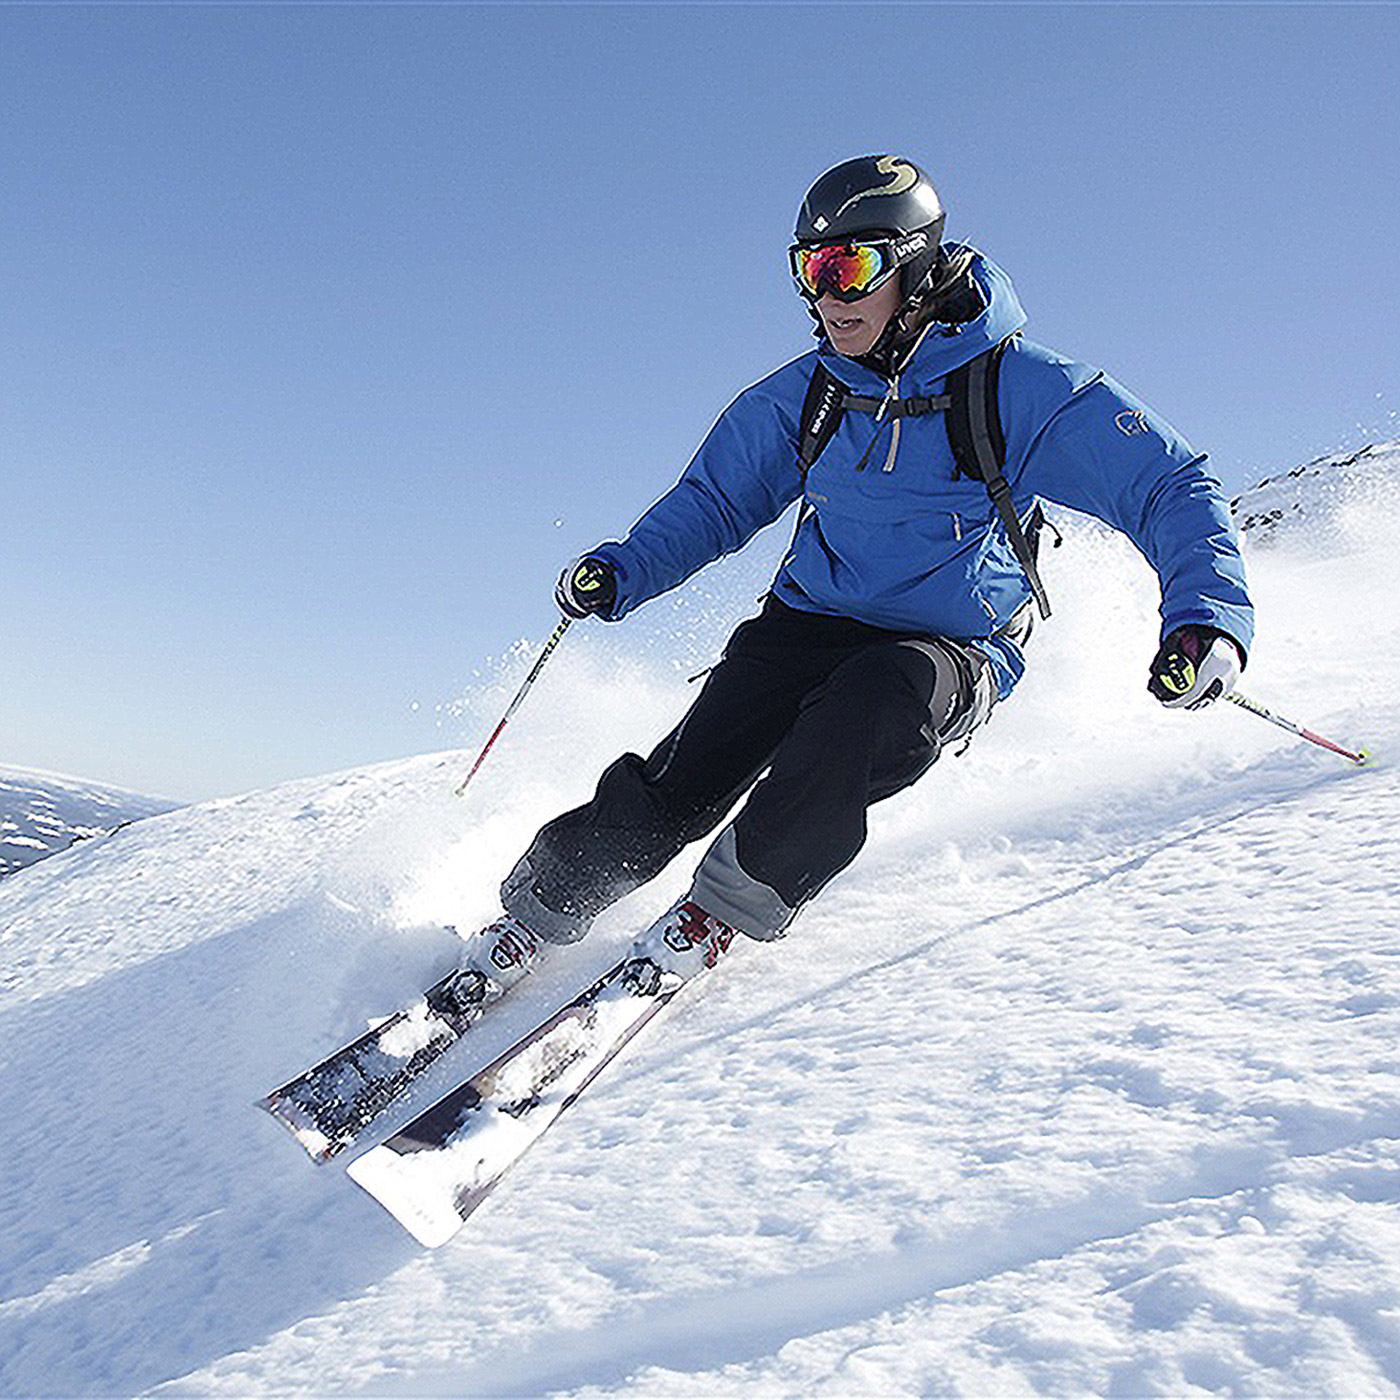 guy-skiing-in-hemsedal-dsbw-1400x1400.jpg